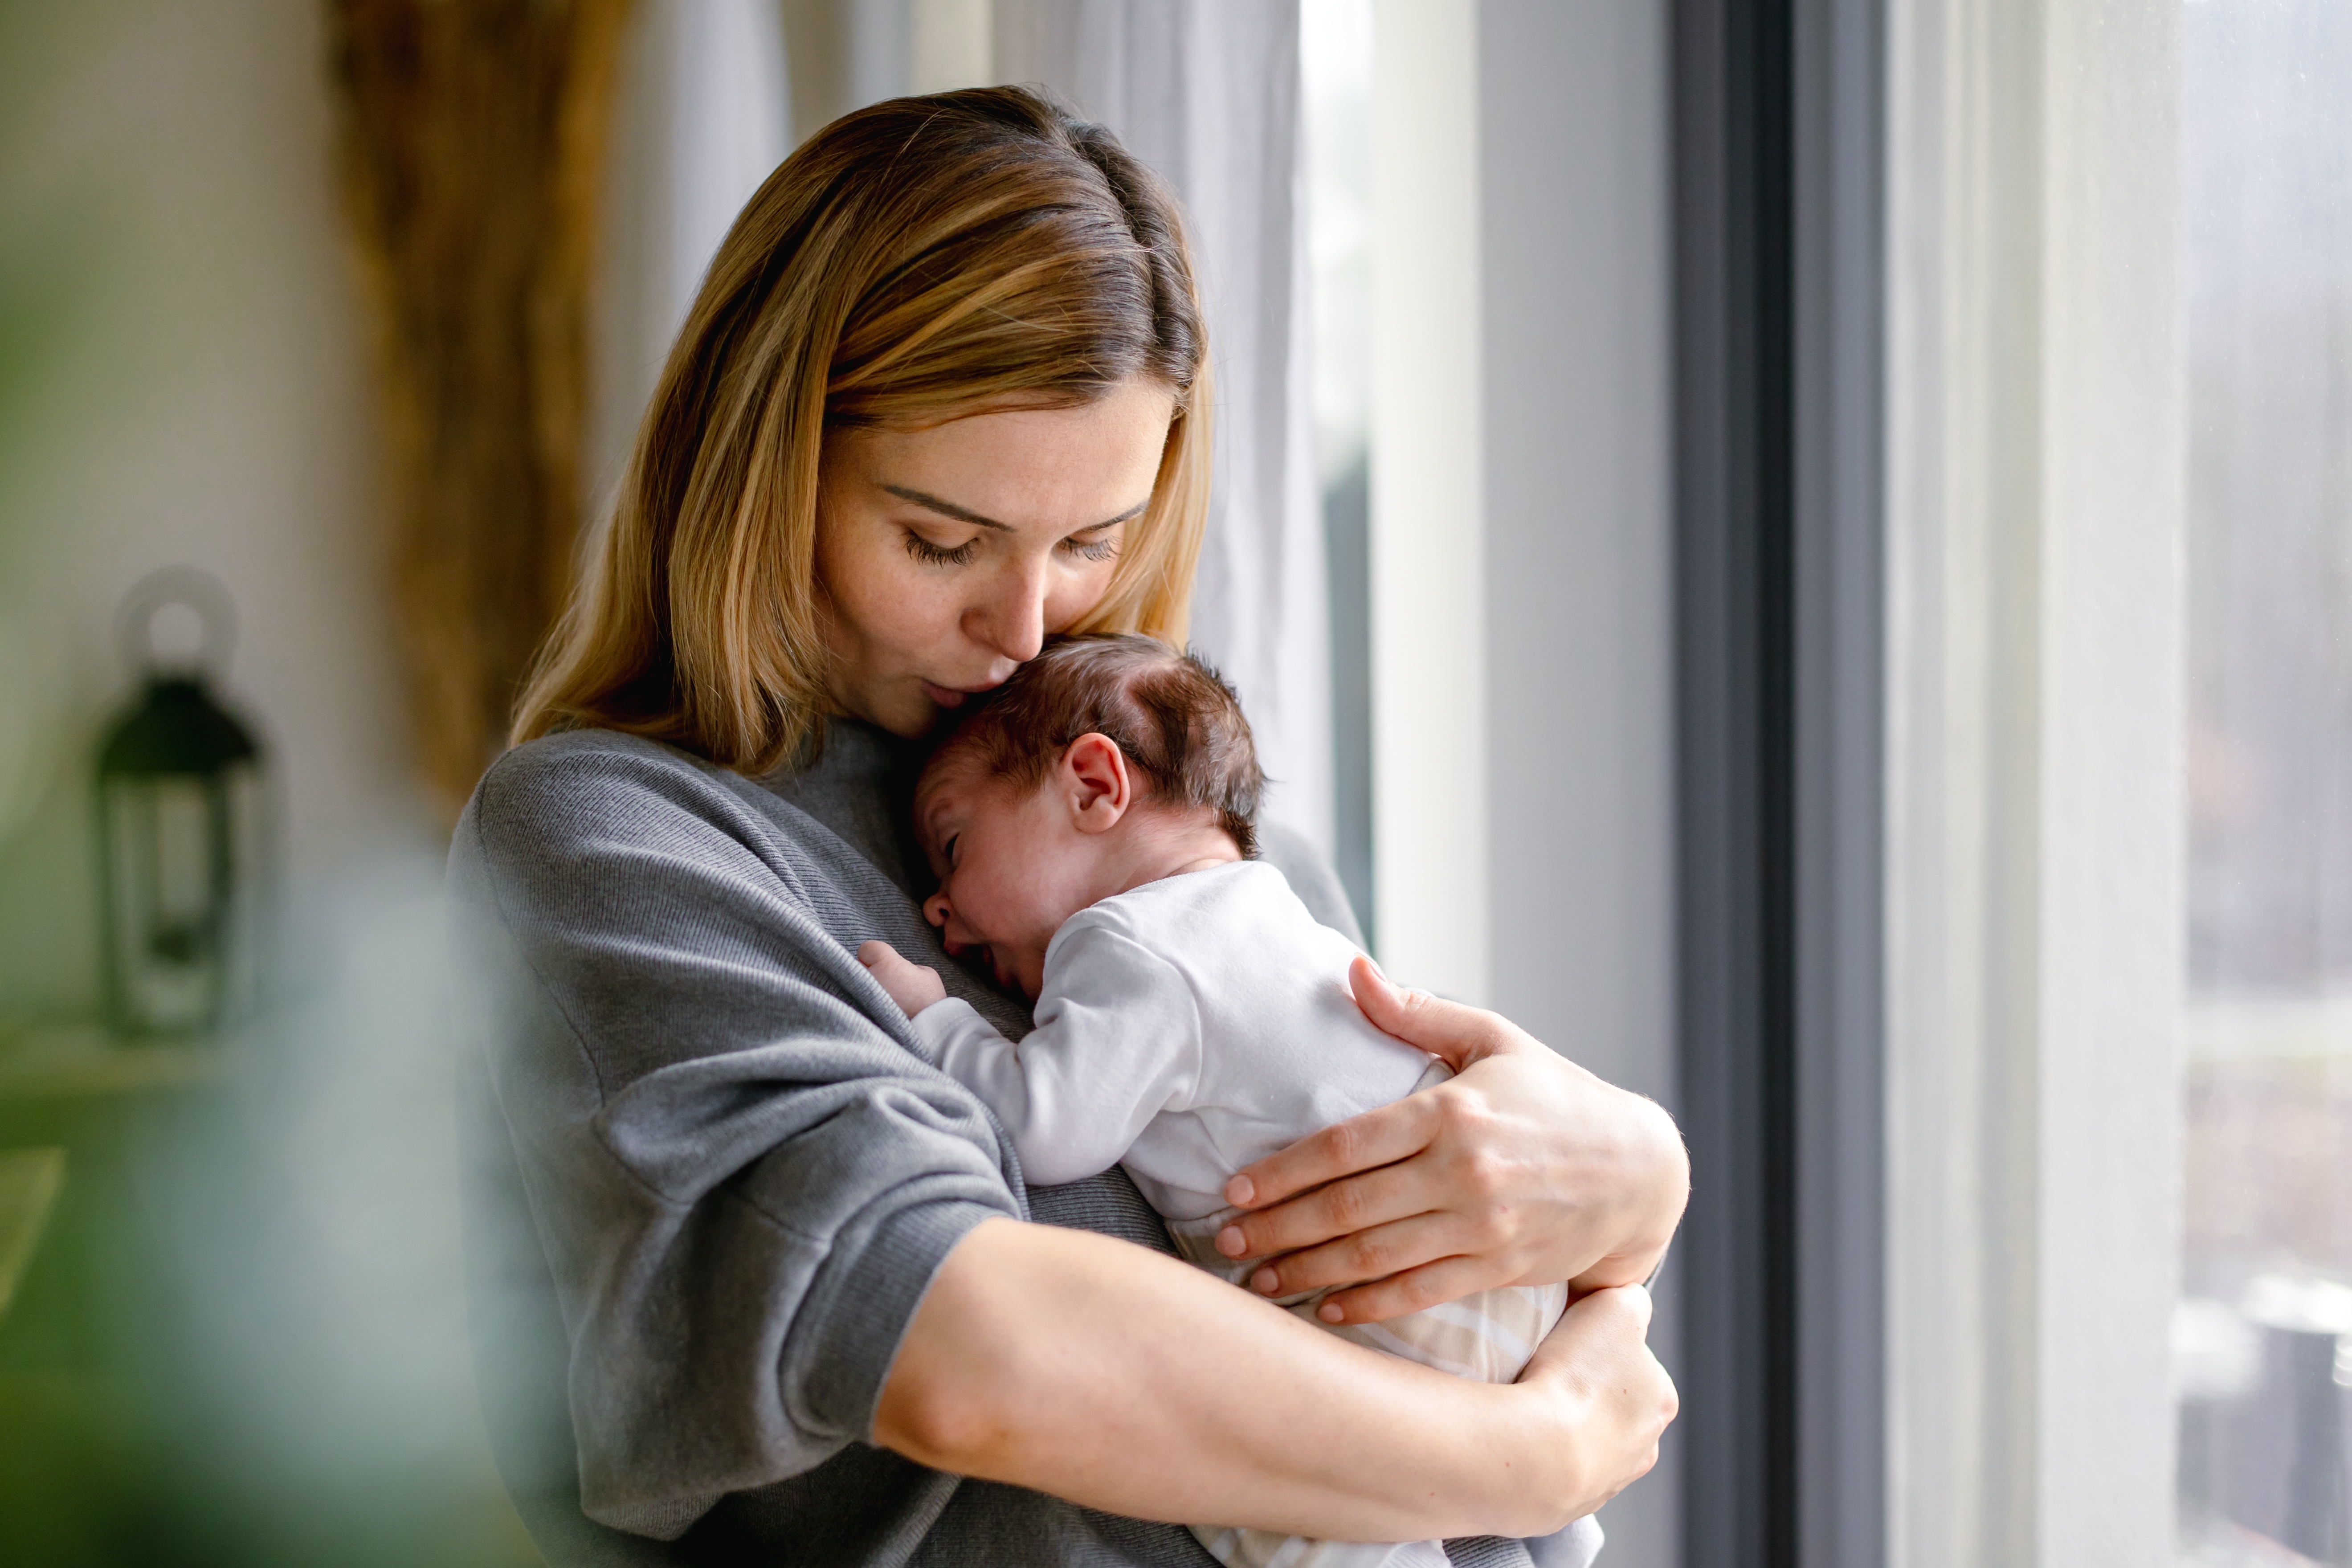 Madre cariñosa abraza a su pequeño bebé en casa | Fuente: Shutterstock.com